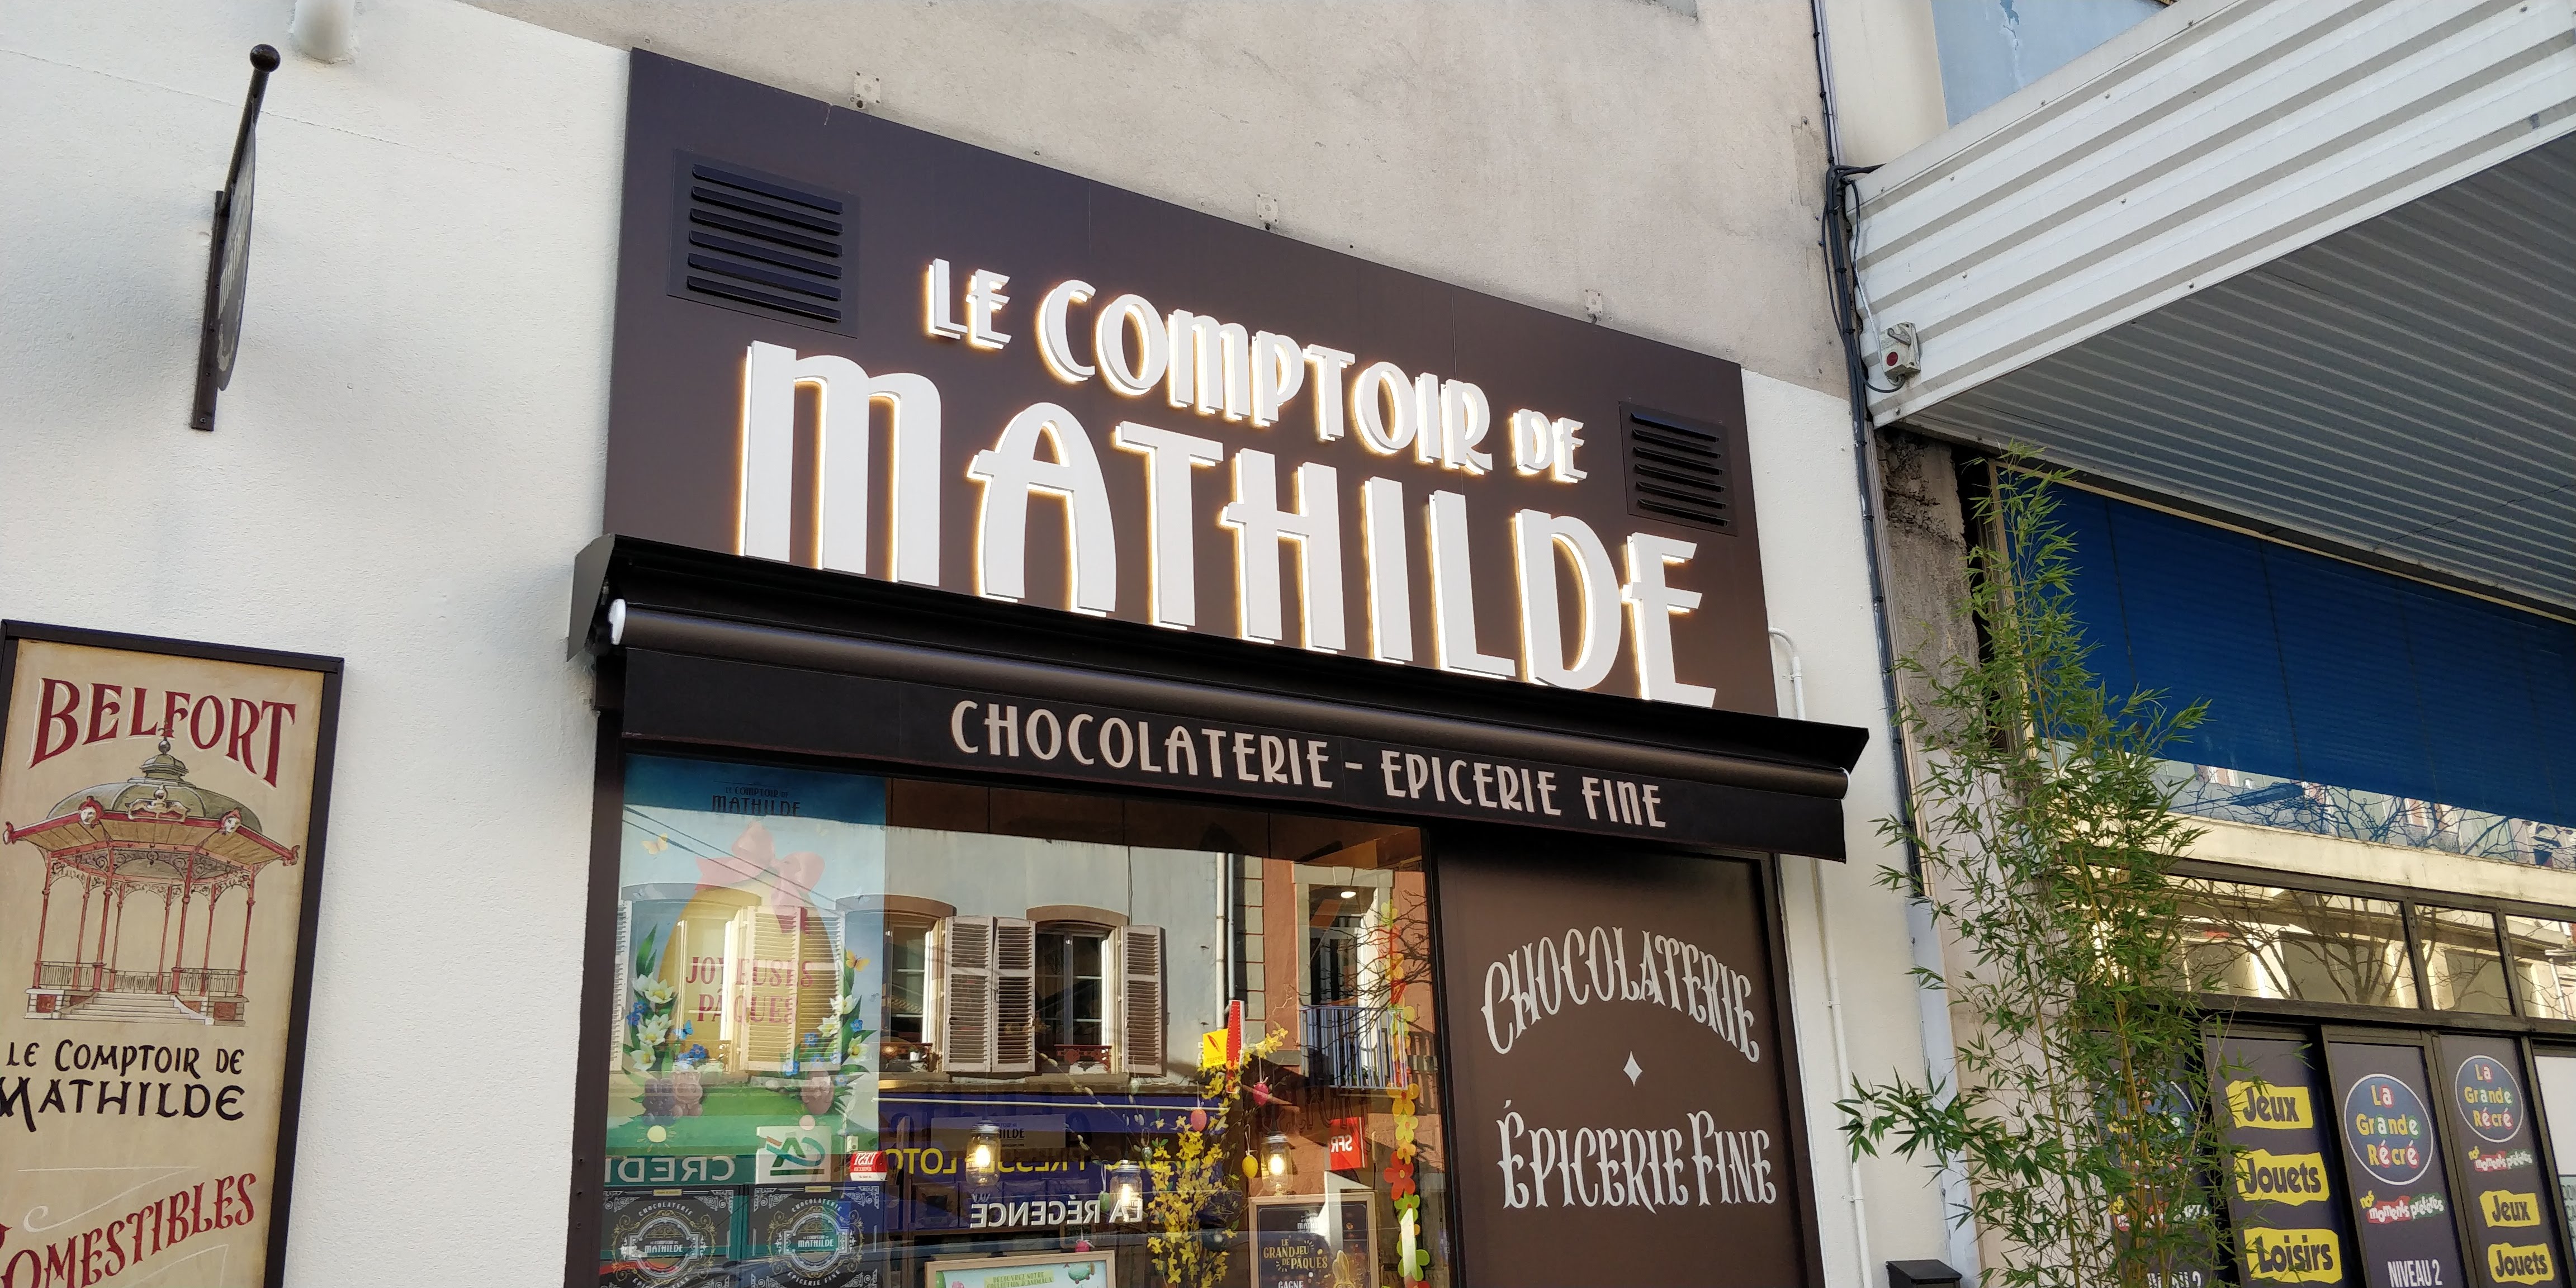 Le Comptoir de Mathilde - Belfort